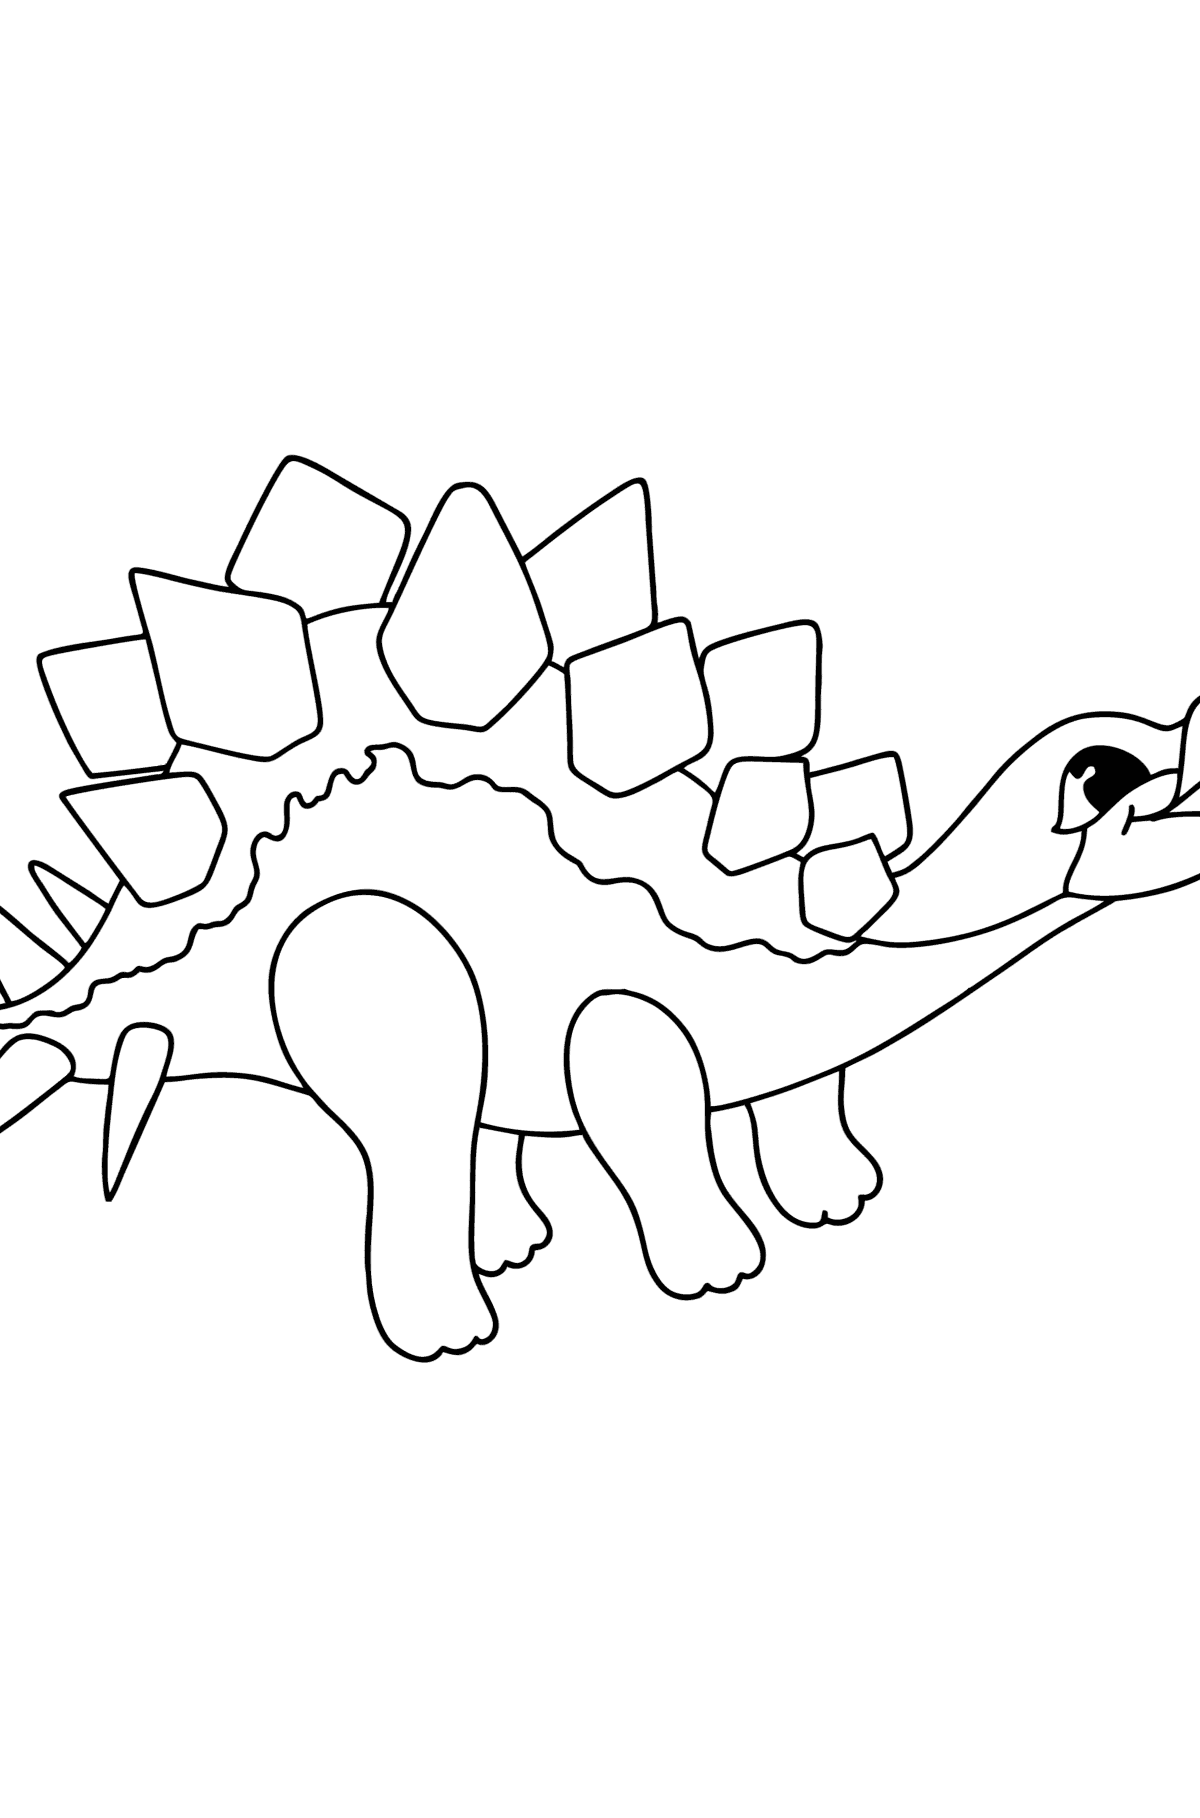 Boyama sayfası stegosaurus - Boyamalar çocuklar için